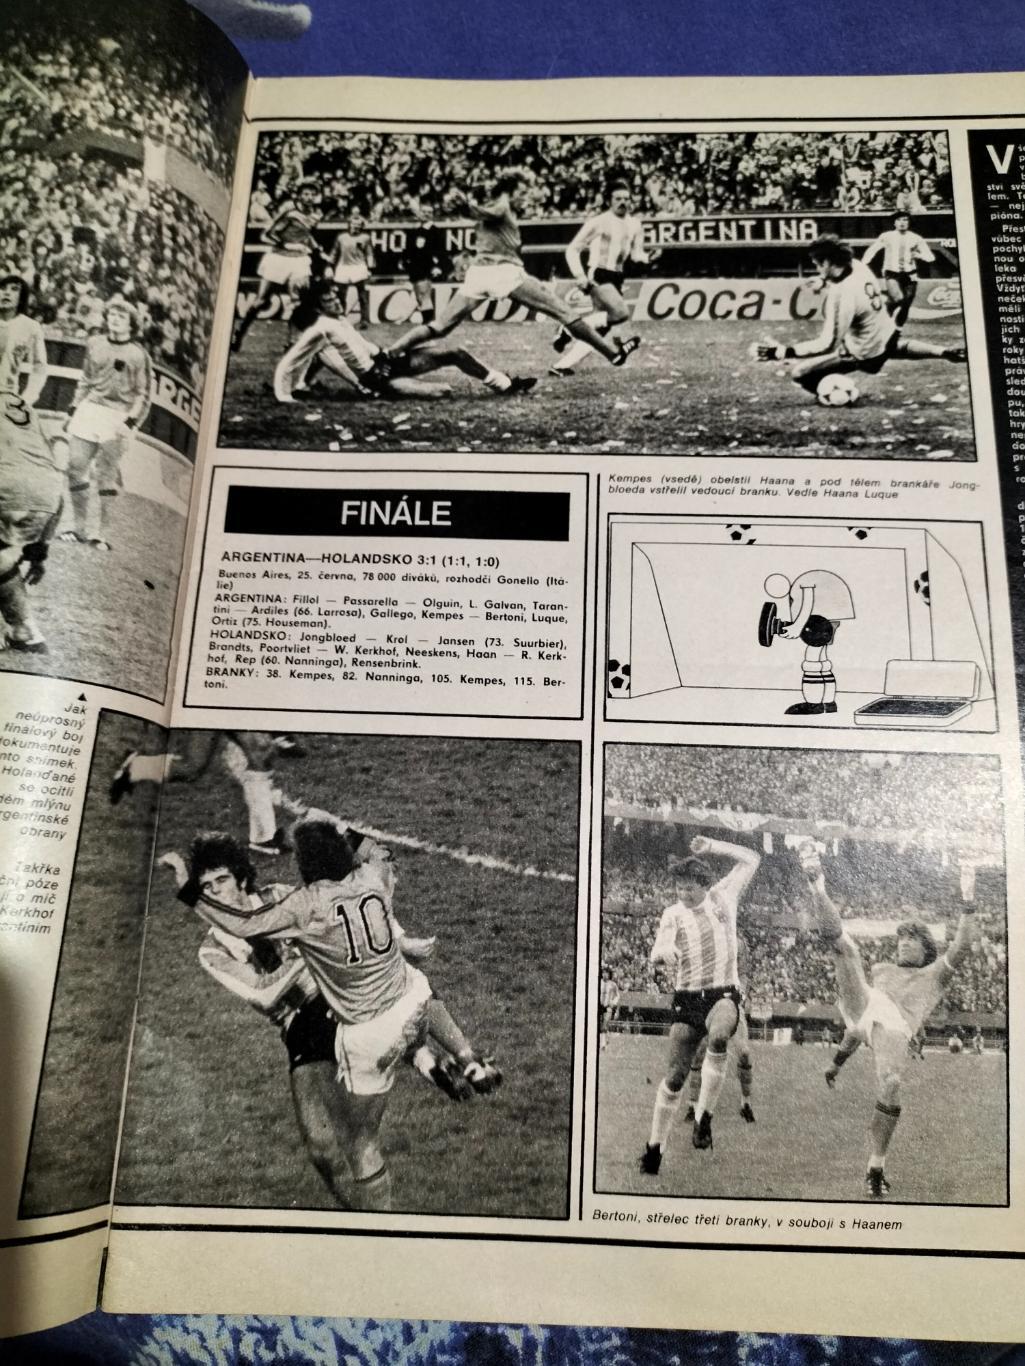 Журнал Stadion №31 1978 год(итоги Чемп.Мира-1978) 2